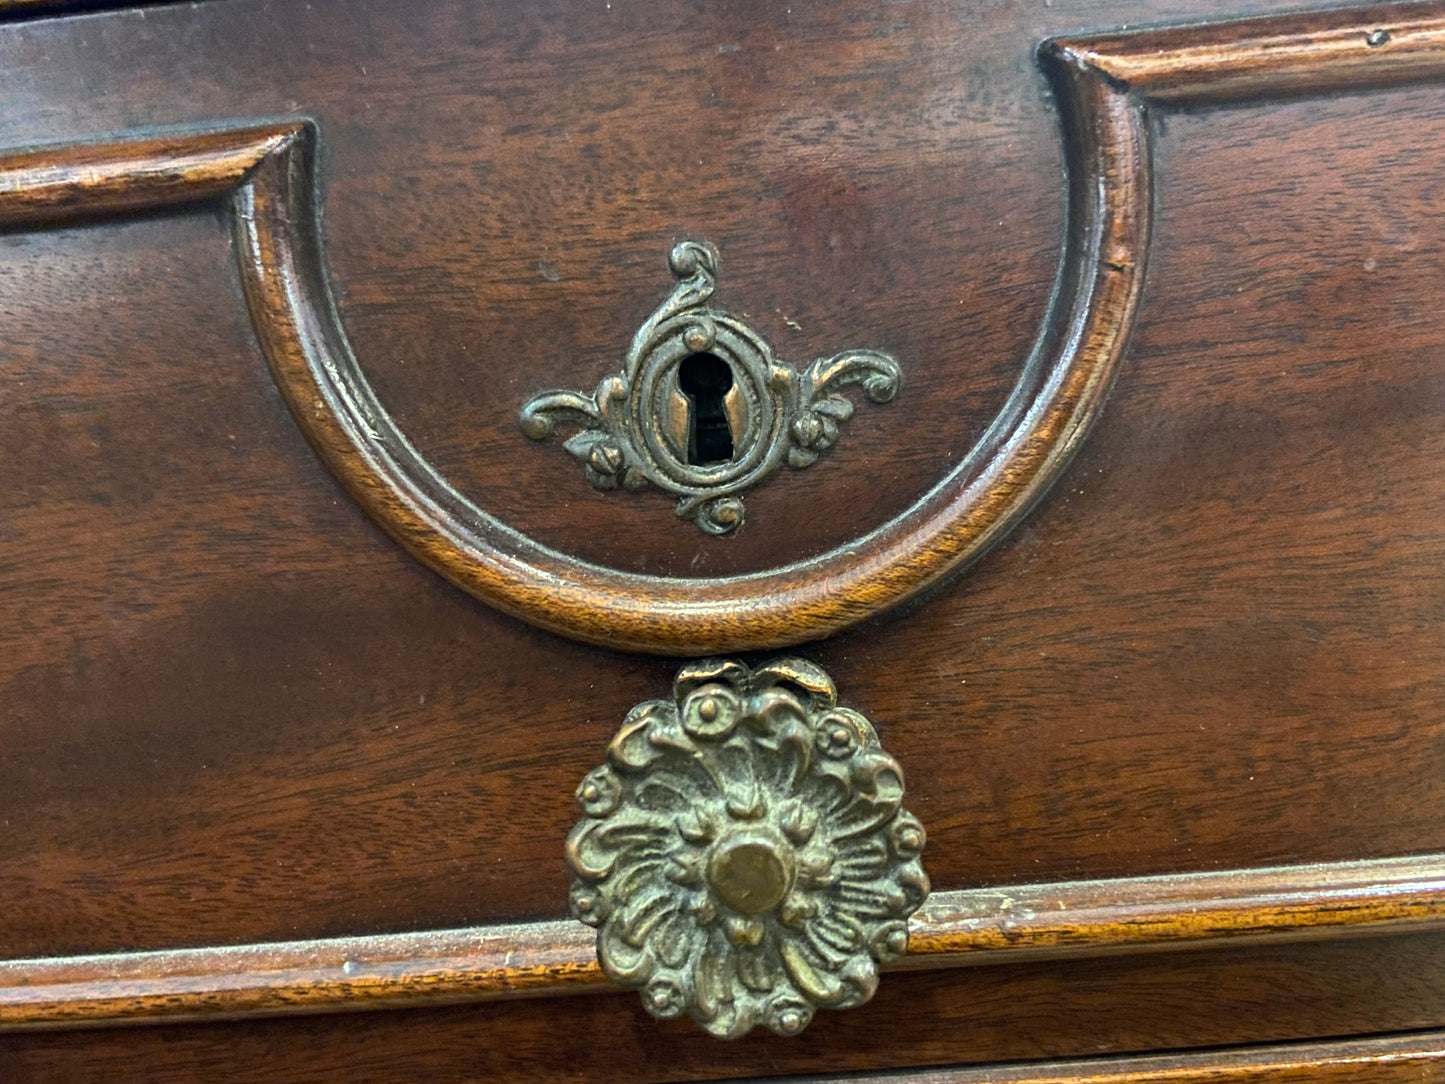 Antique Dresser with Mirror (24527)